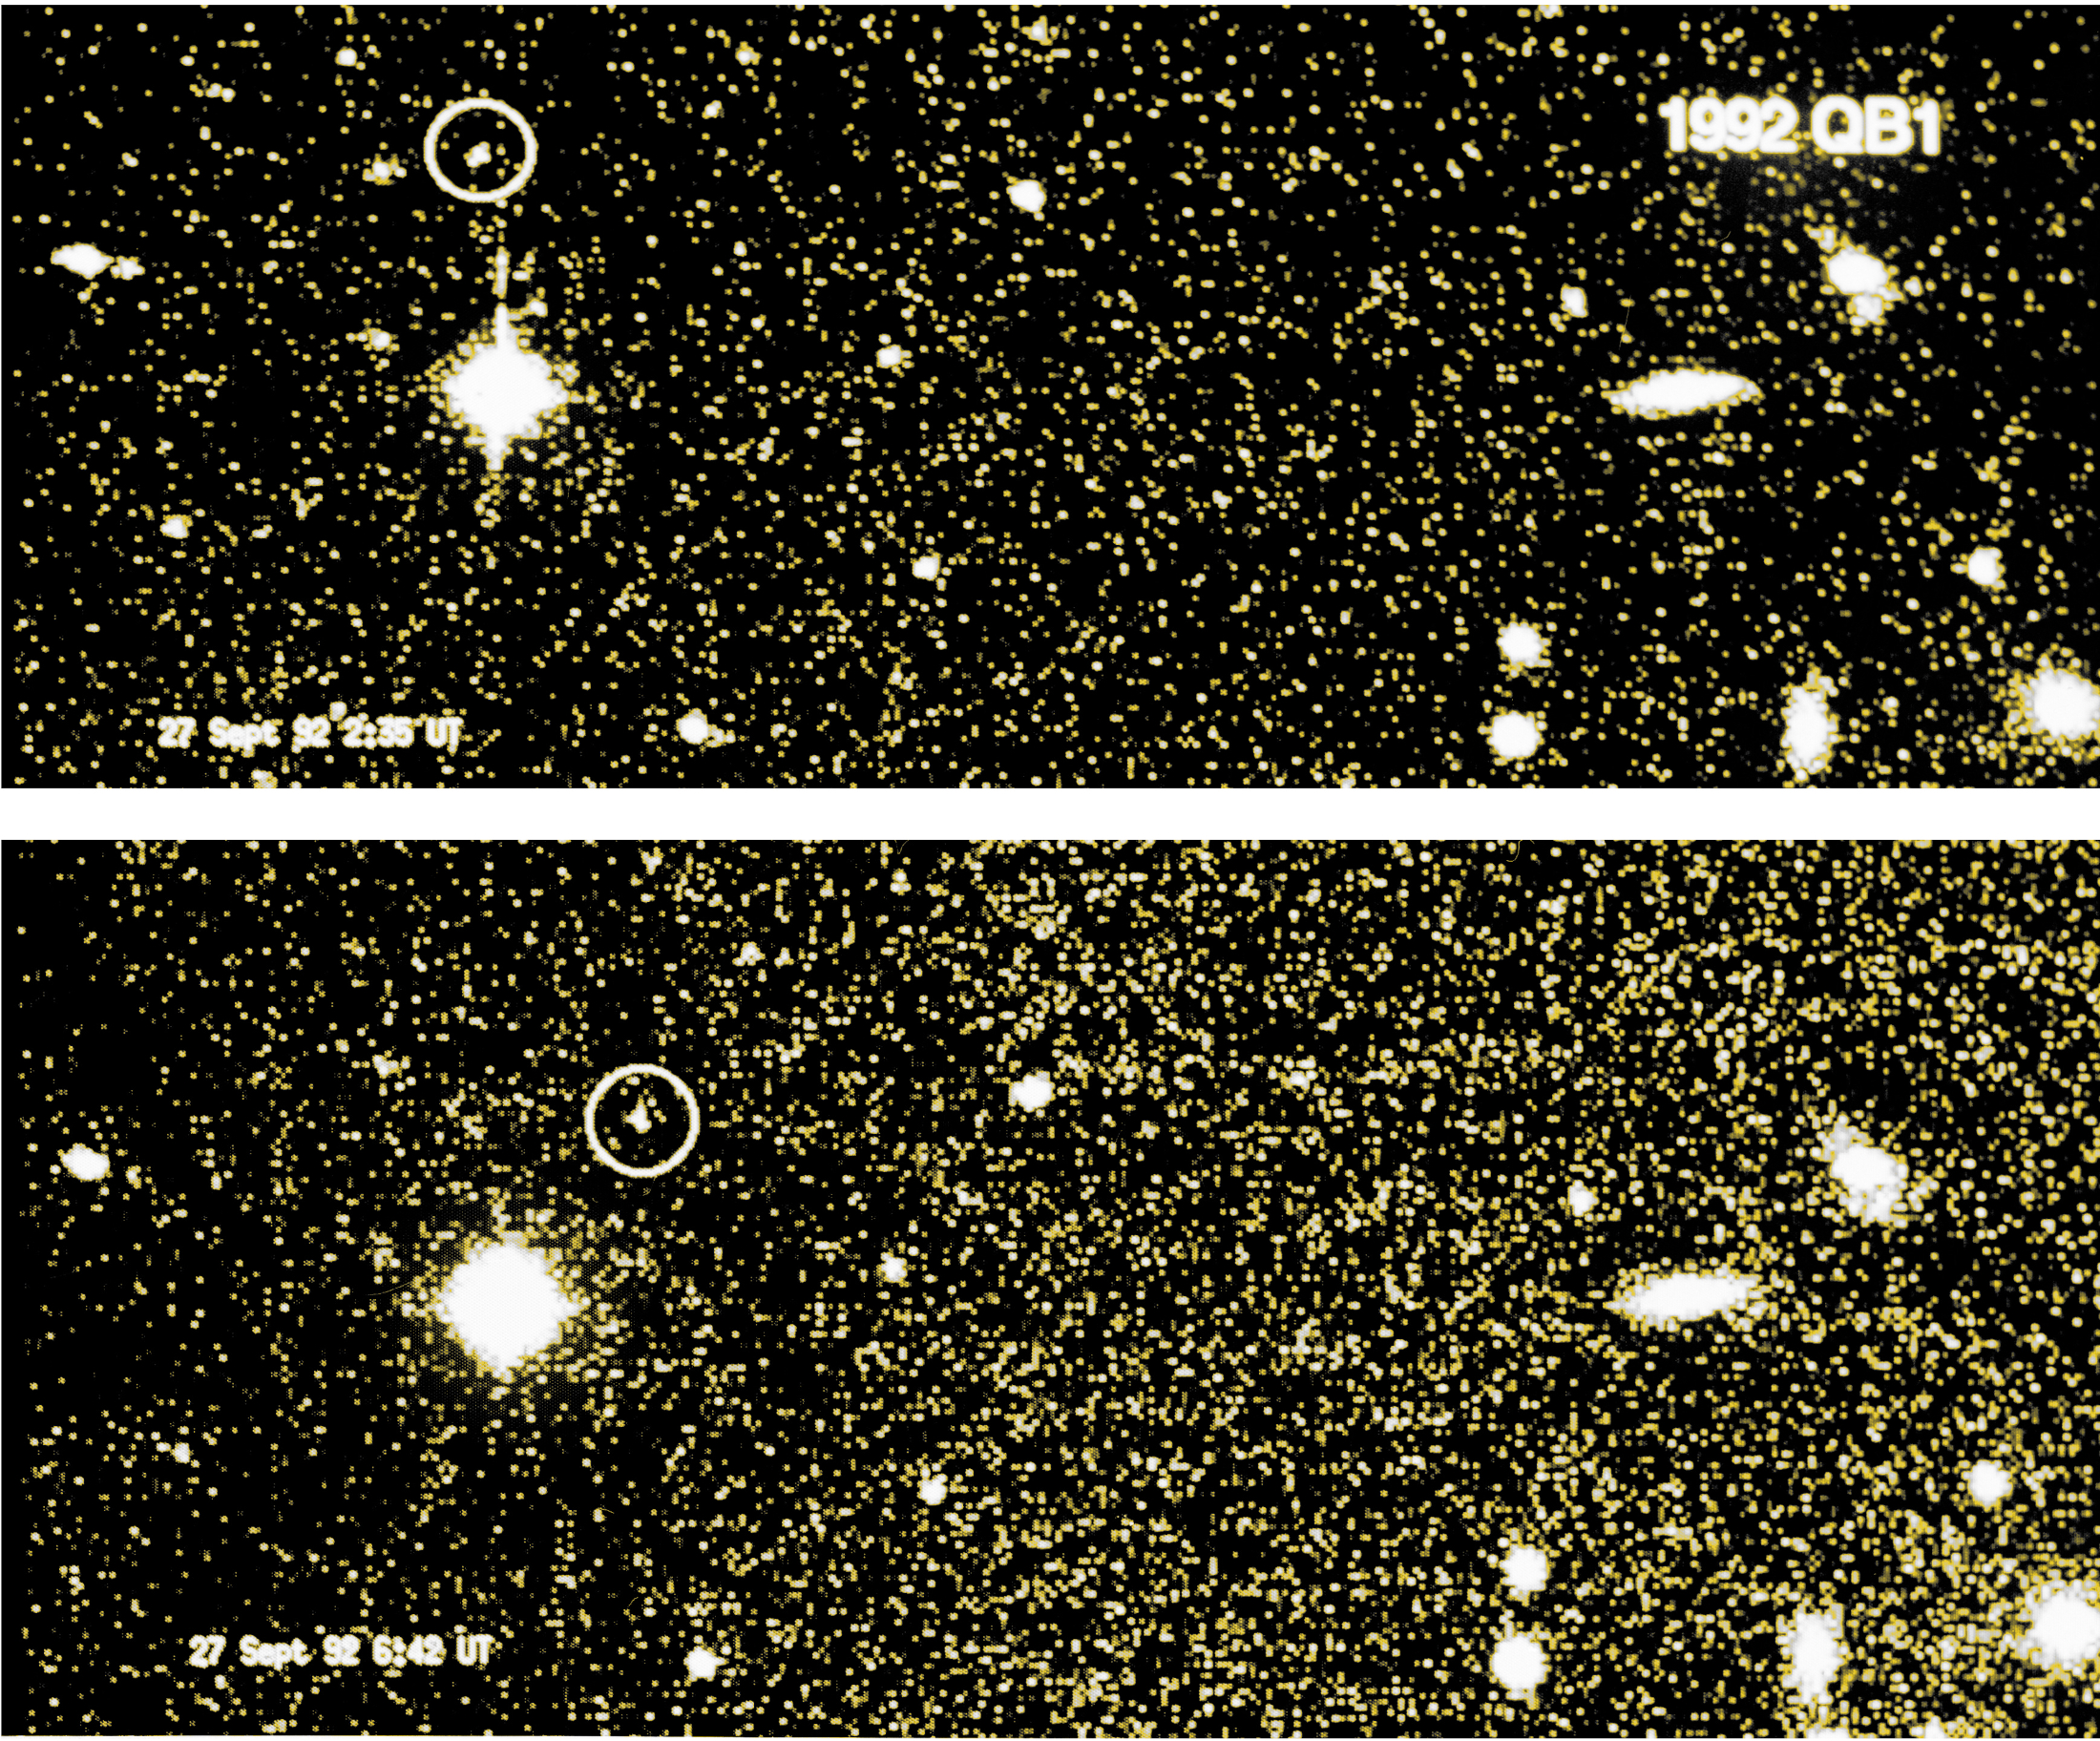 30 años de descubrimiento desde 1992 QB1 – el principio del fin de Plutón